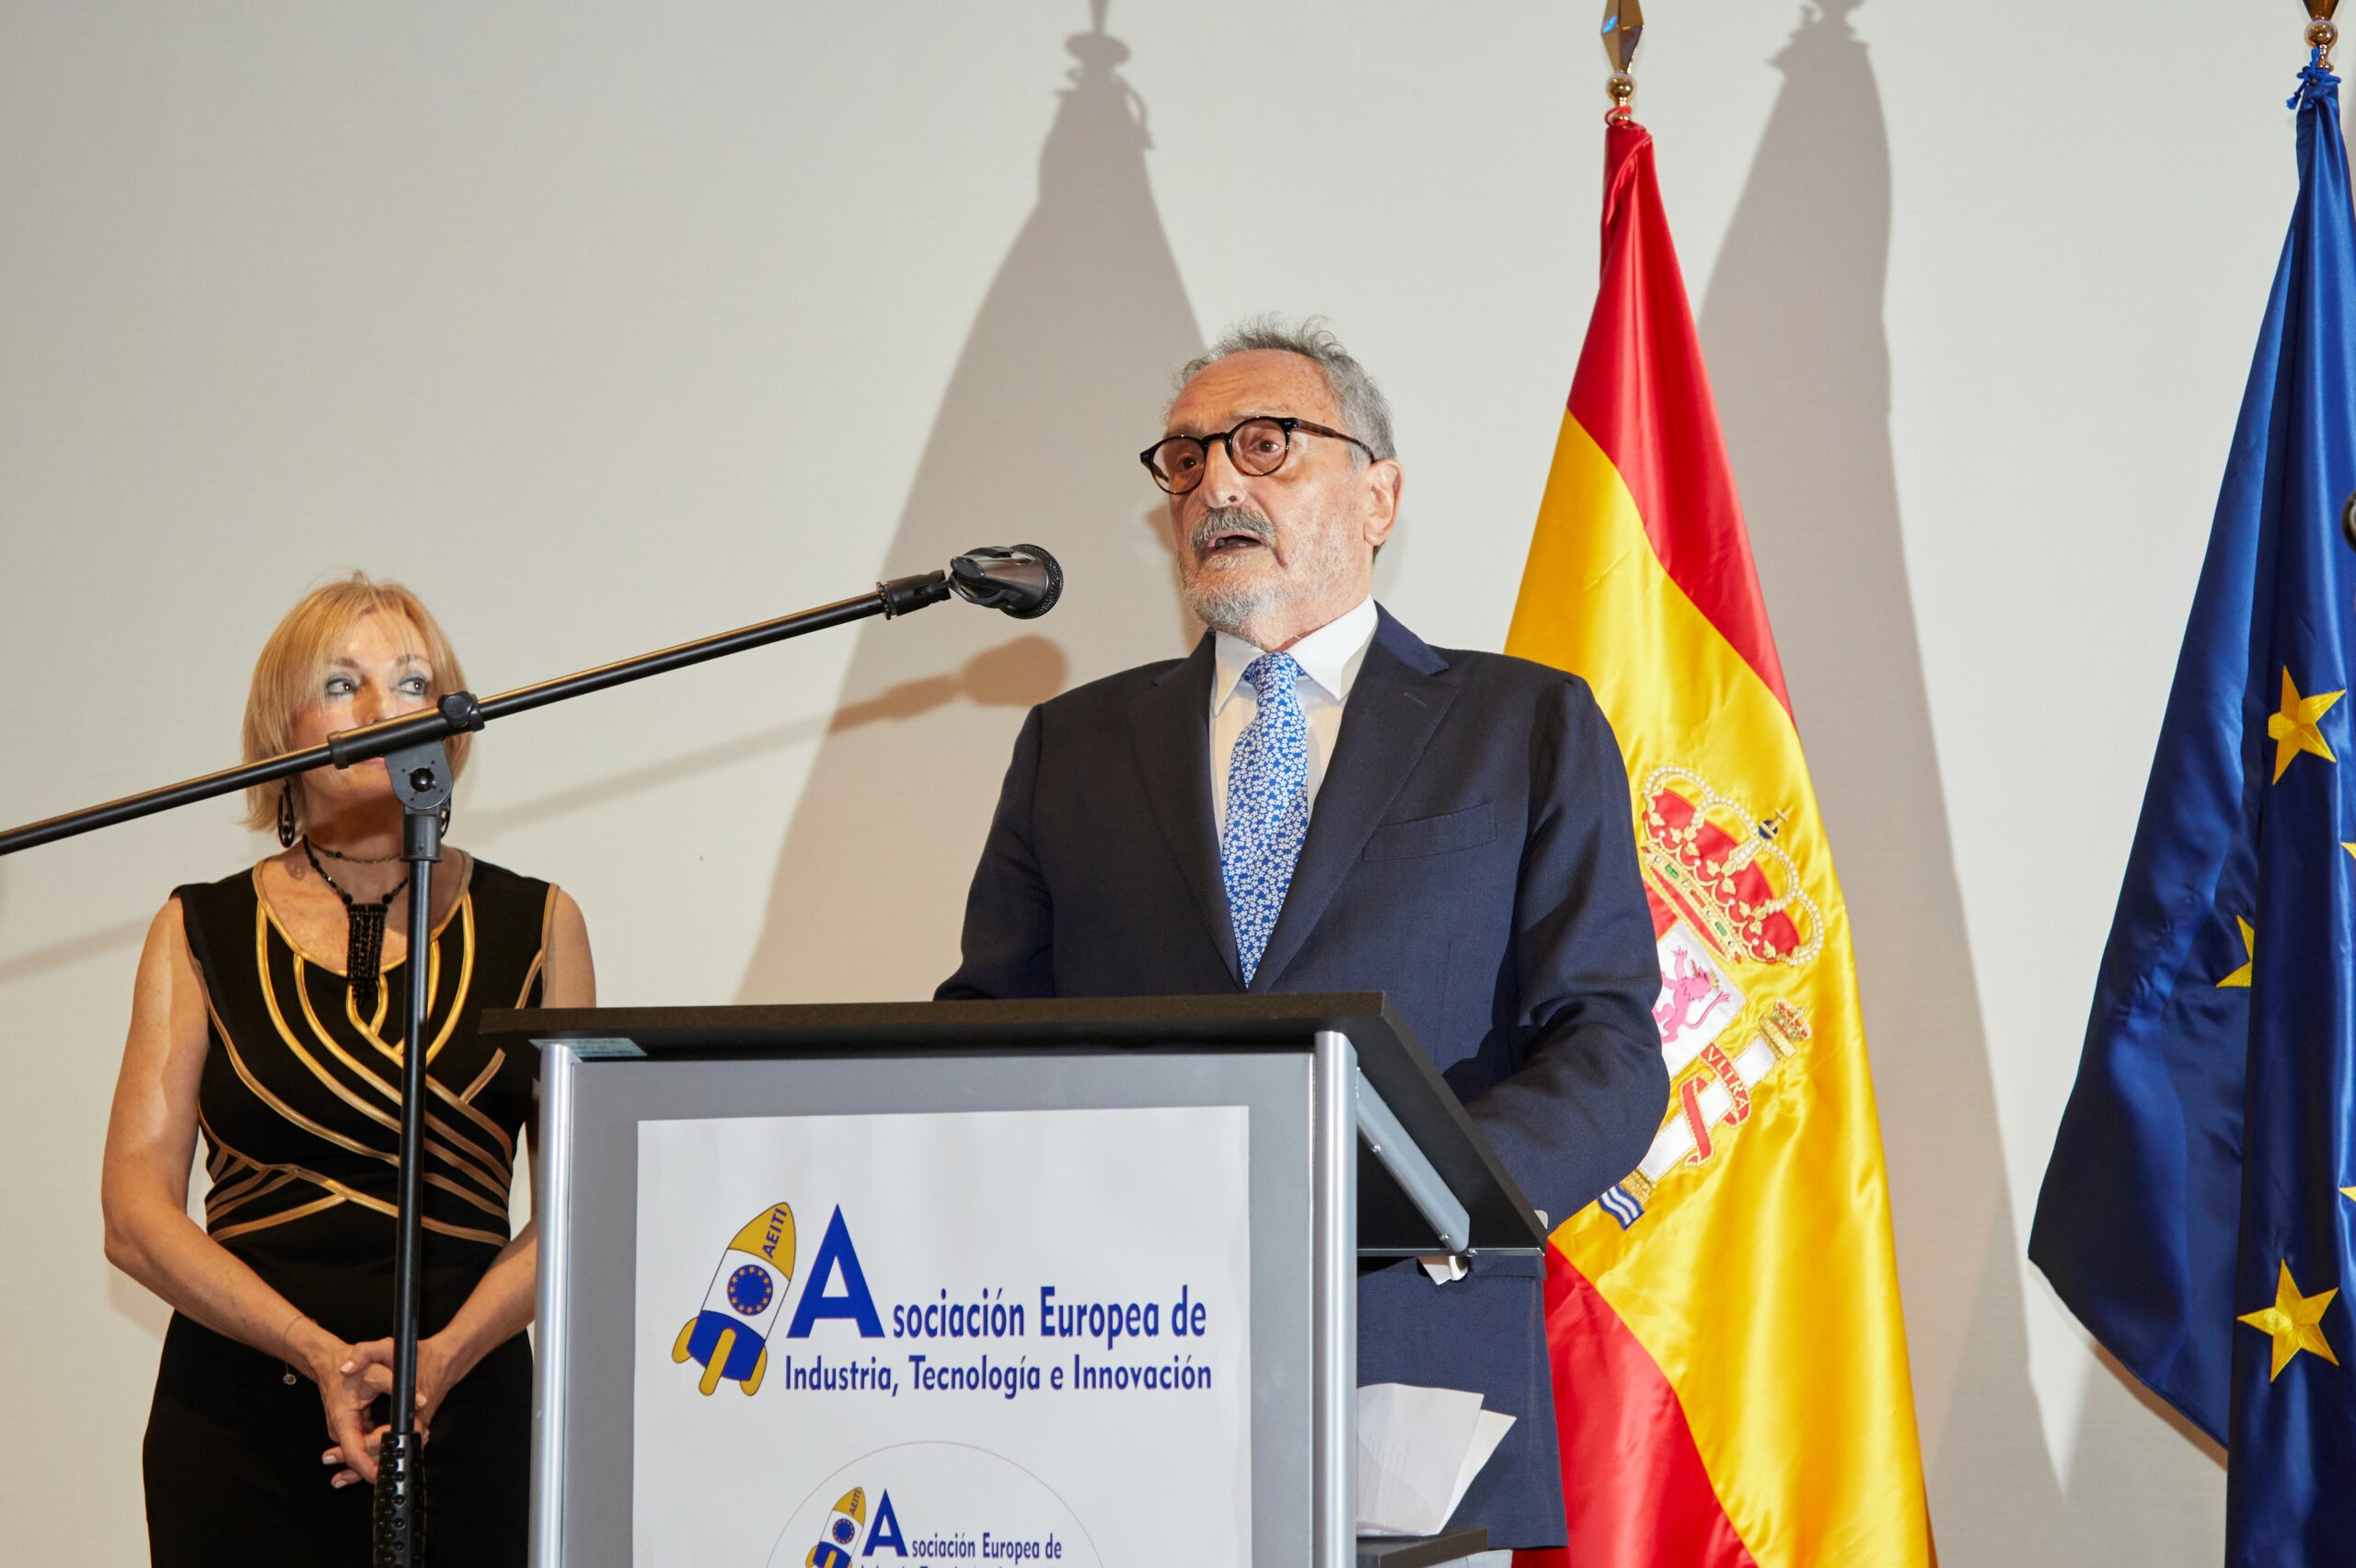 Alberto Ordoñez, endocrino en Vithas Madrid Arturo Soria, recibe el premio Estetoscopio de Oro